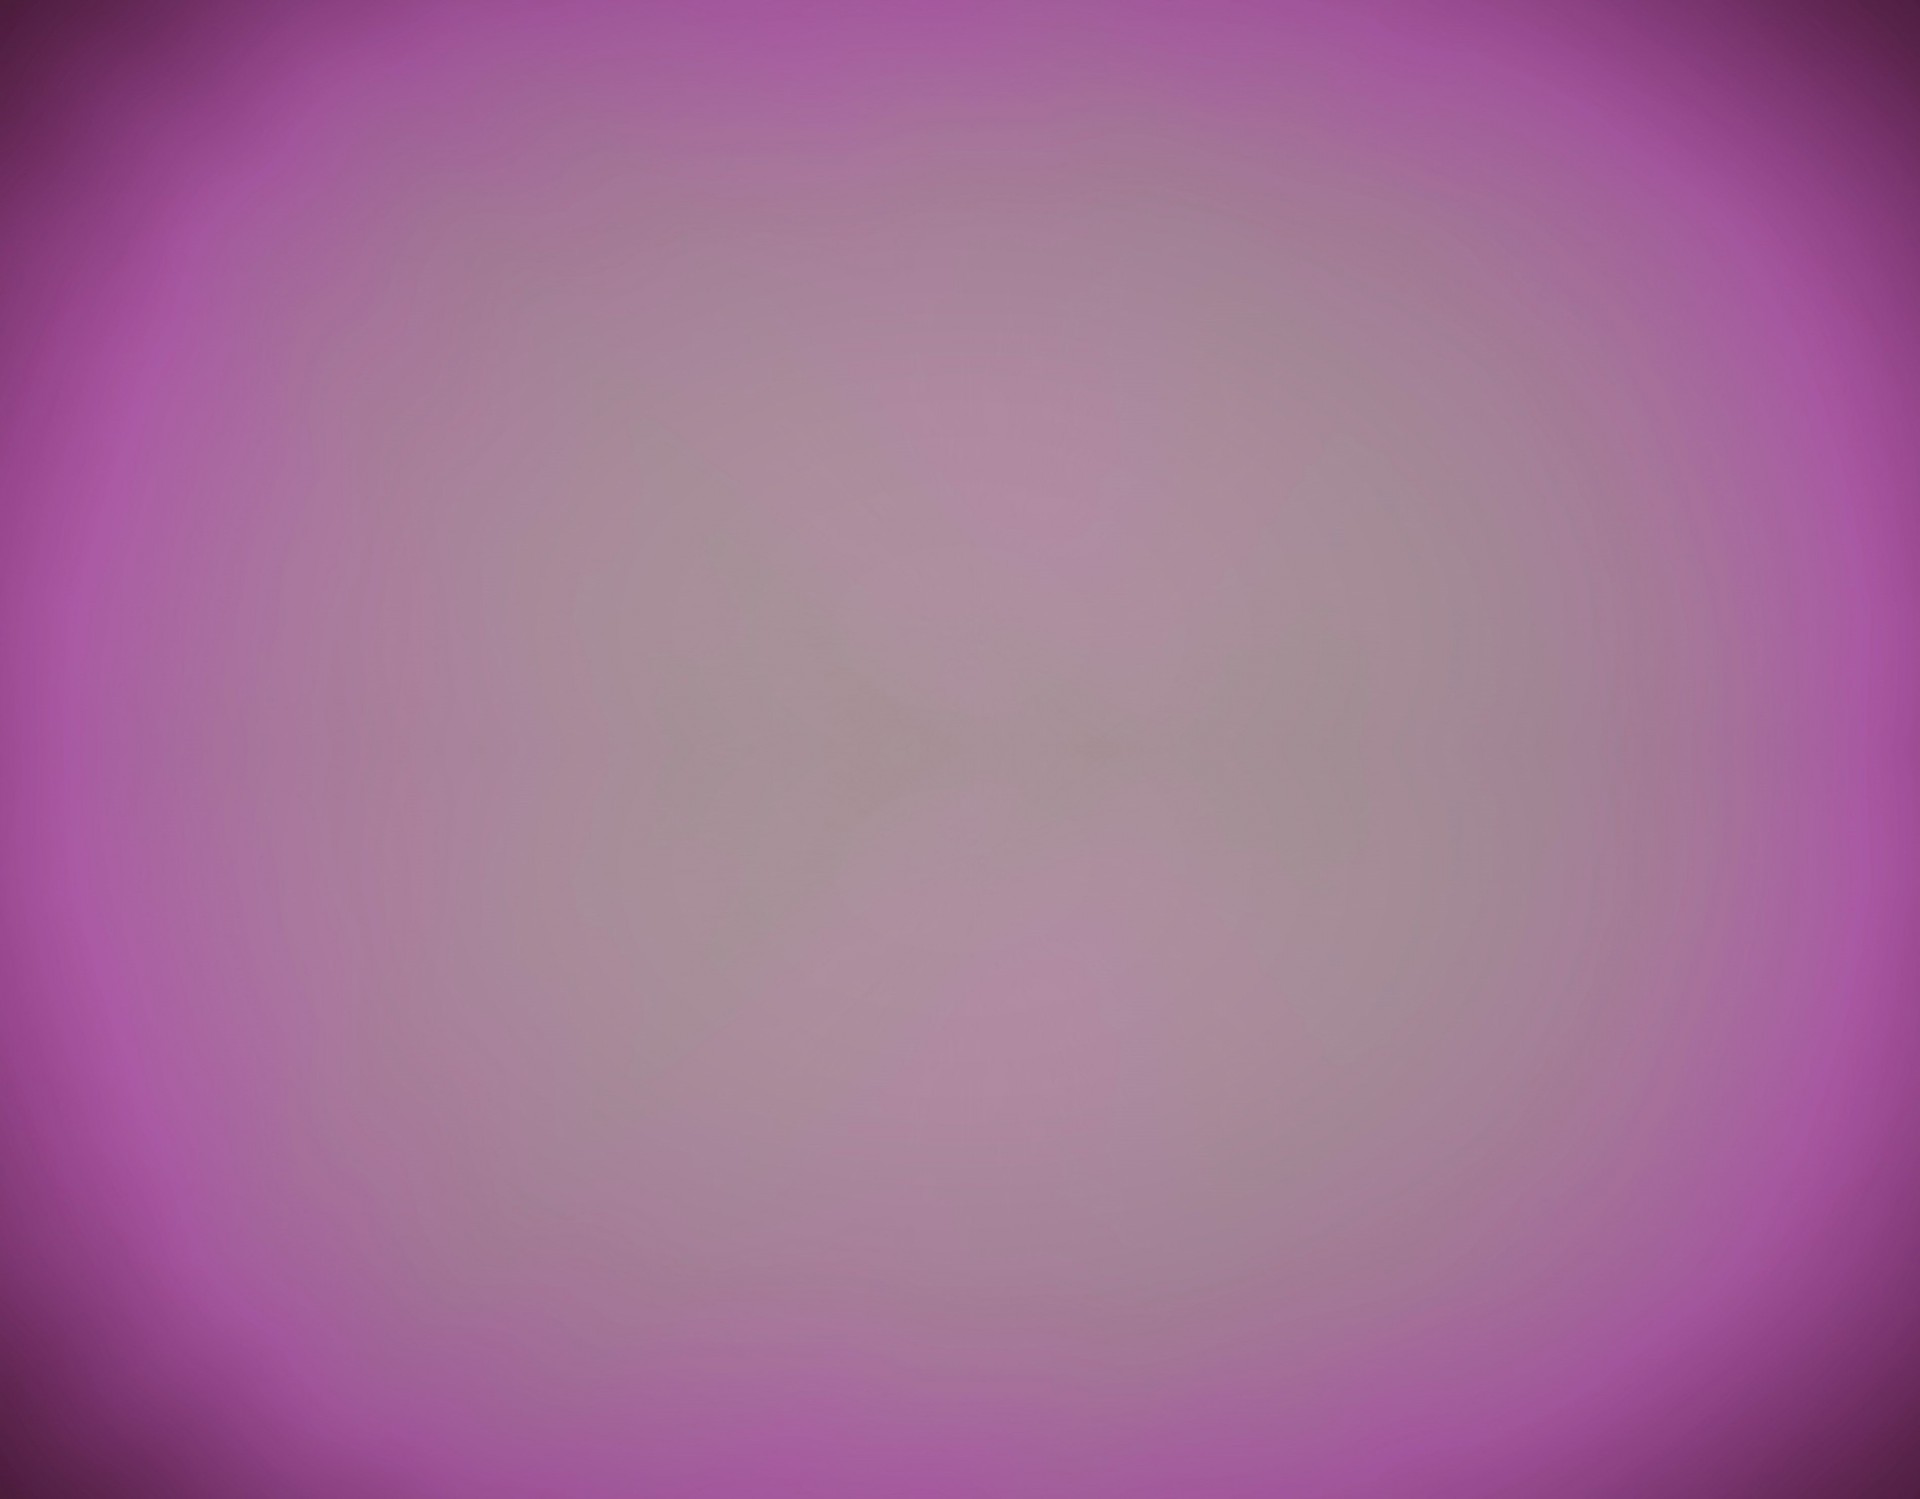 1920x1499 Bright Pink Vignette Background